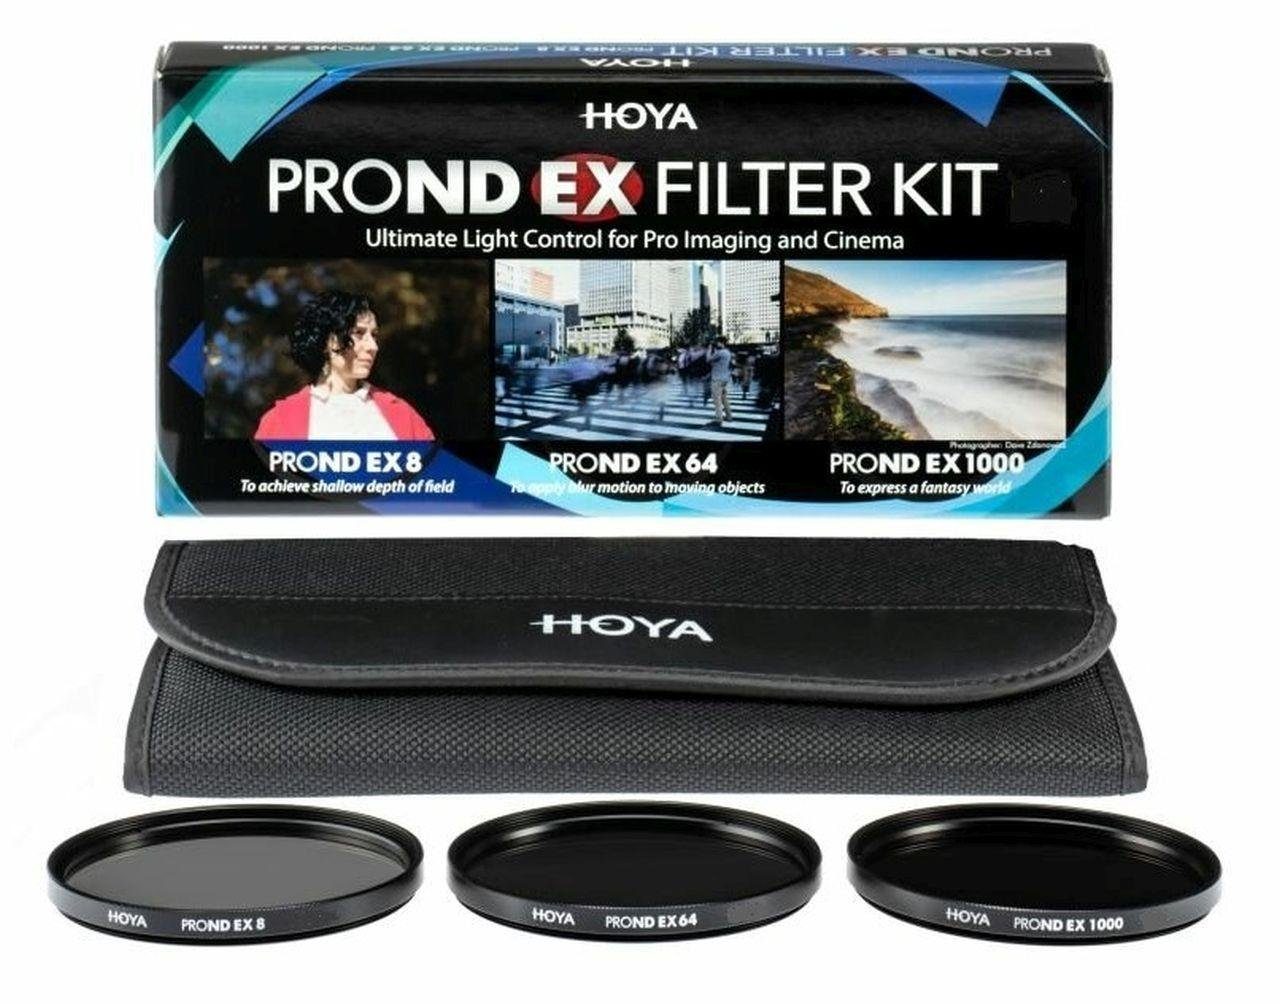 Hoya PROND EX ND Filter Set 8/64/1000 62mm Objektivzubehör